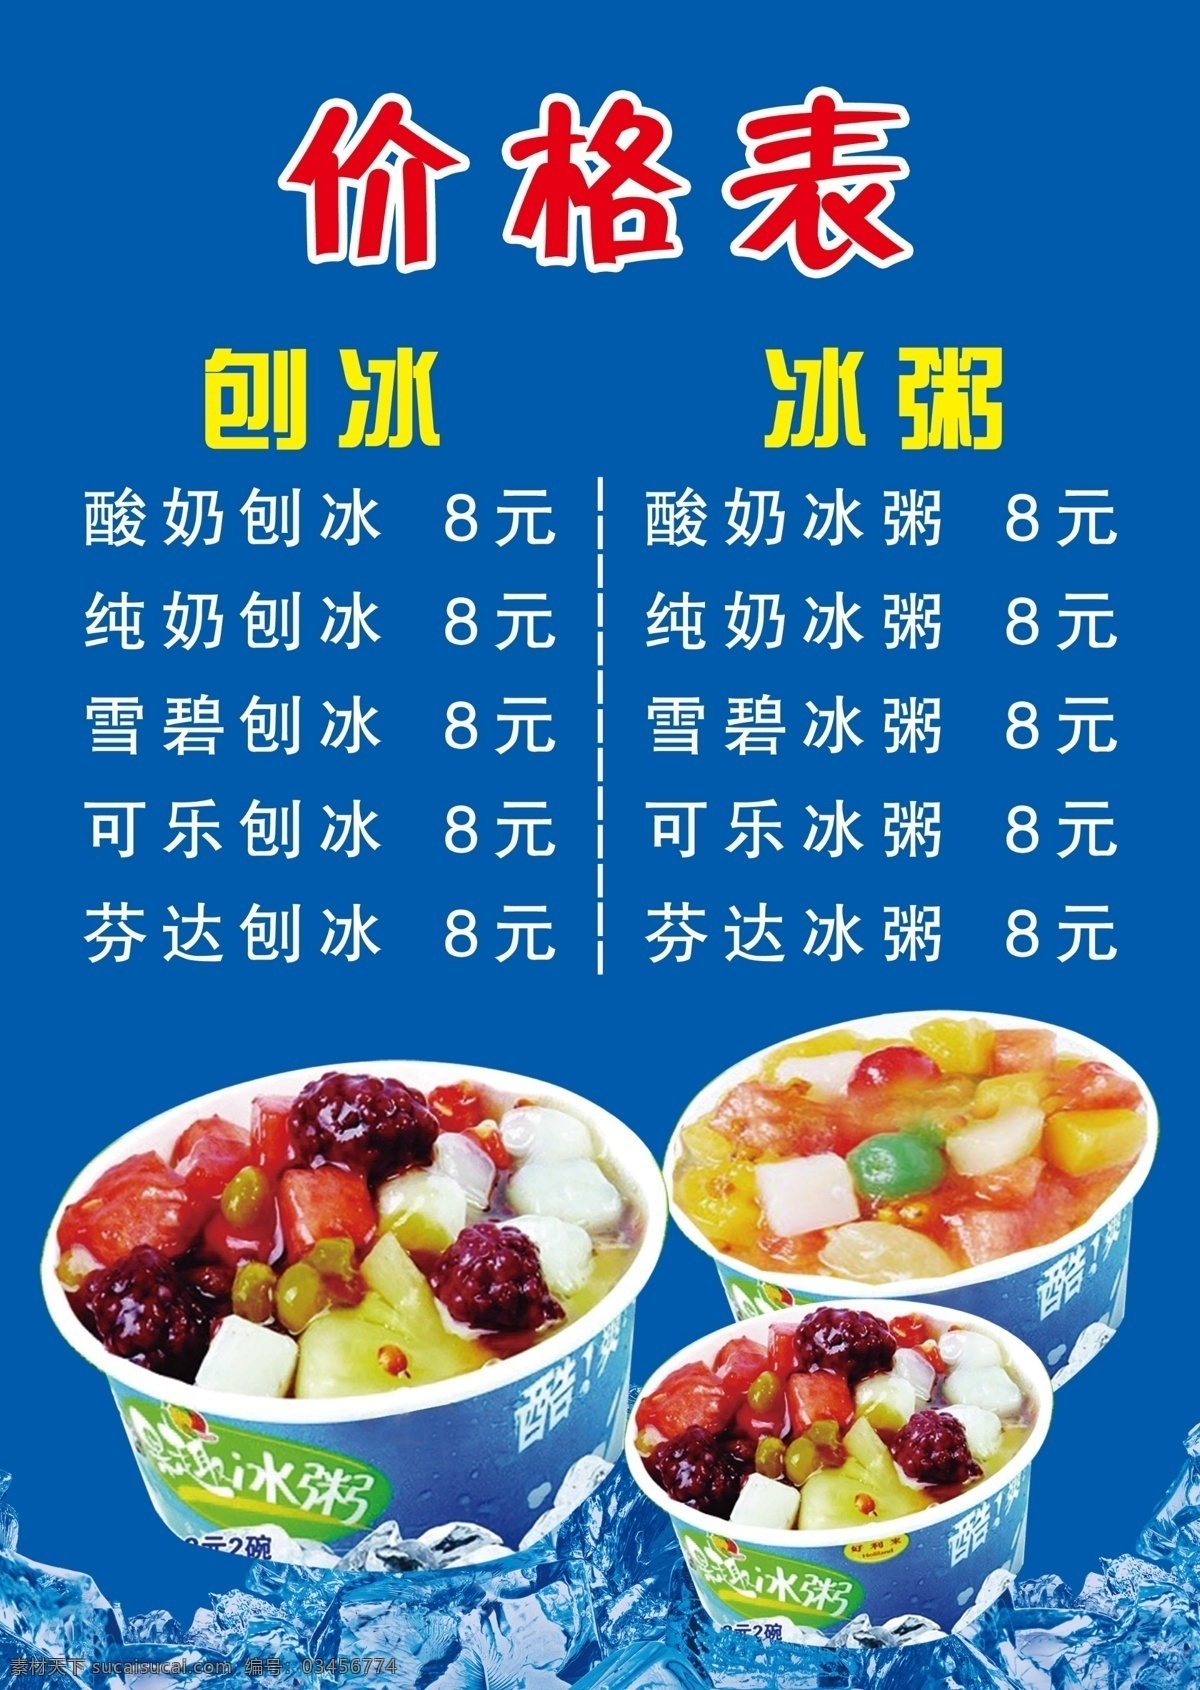 刨冰价格表 刨冰 价格表 冰粥 价目表 价格 室内广告设计